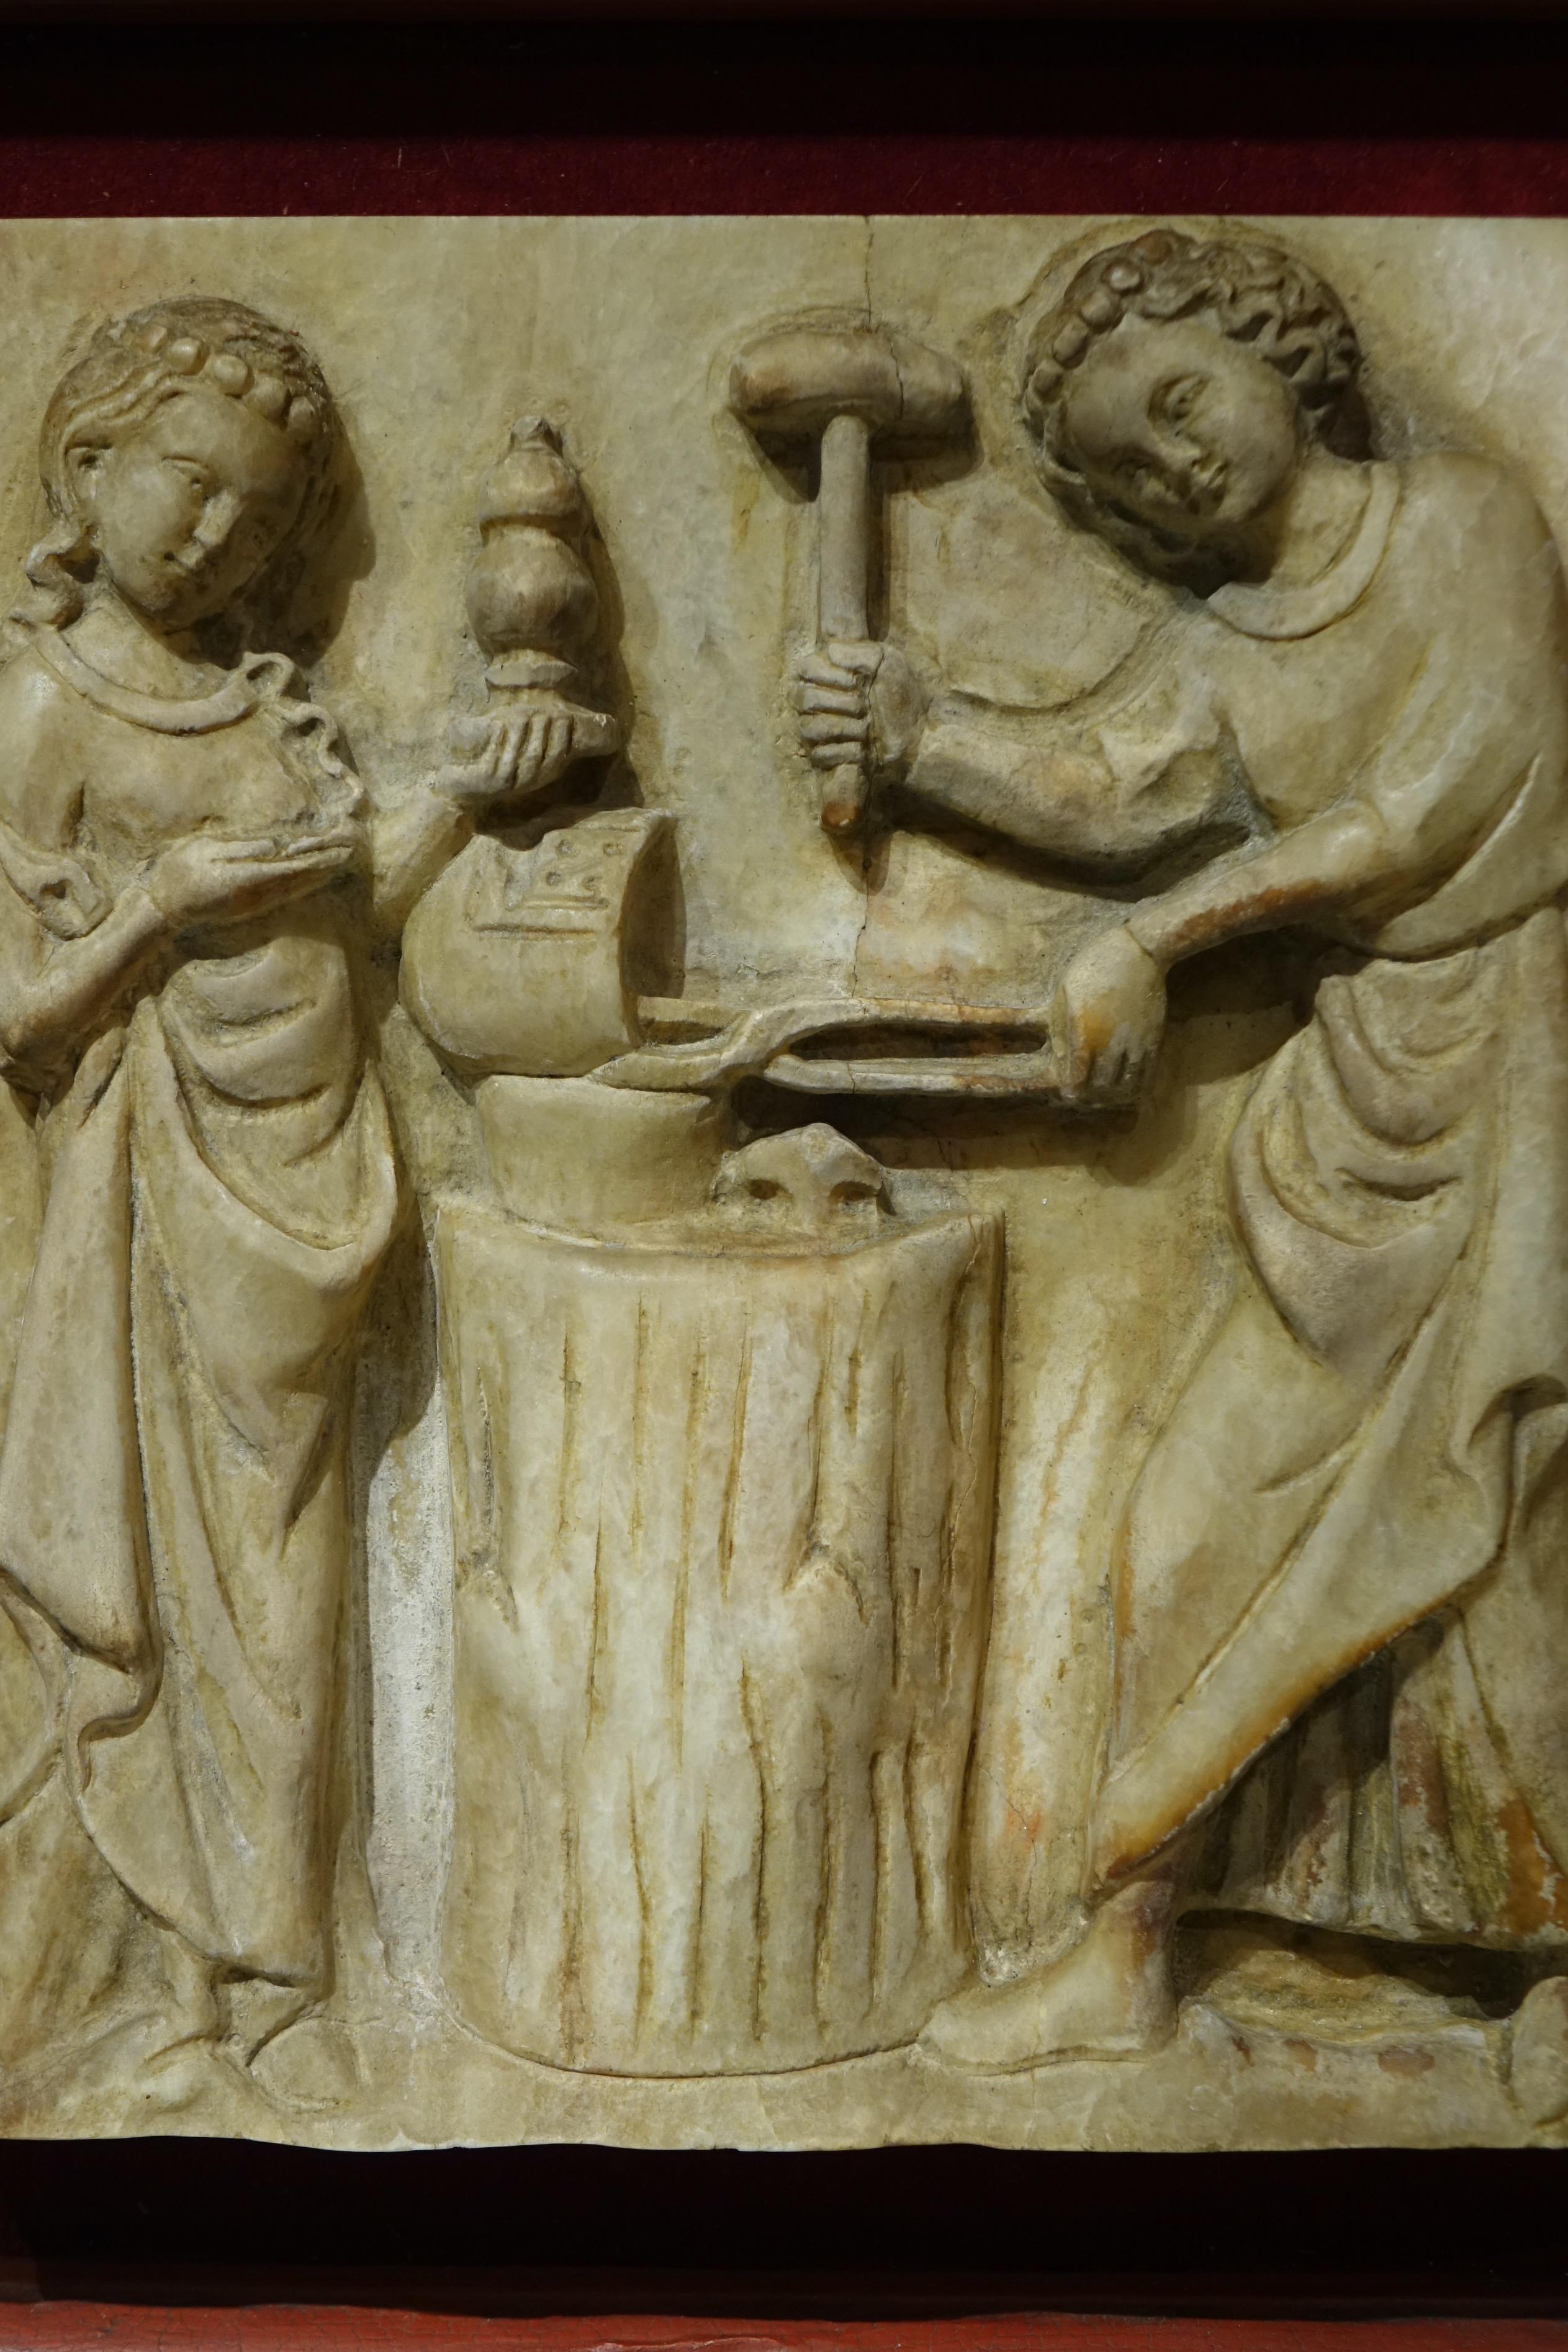 Plaque d'albâtre en haut-relief illustrant un faussaire travaillant sur un objet métallique (un casque ?). Une jeune femme est devant lui, tenant dans sa main gauche un vase ovoïde ou un reliquaire qu'elle tient dans sa main droite.
La scène